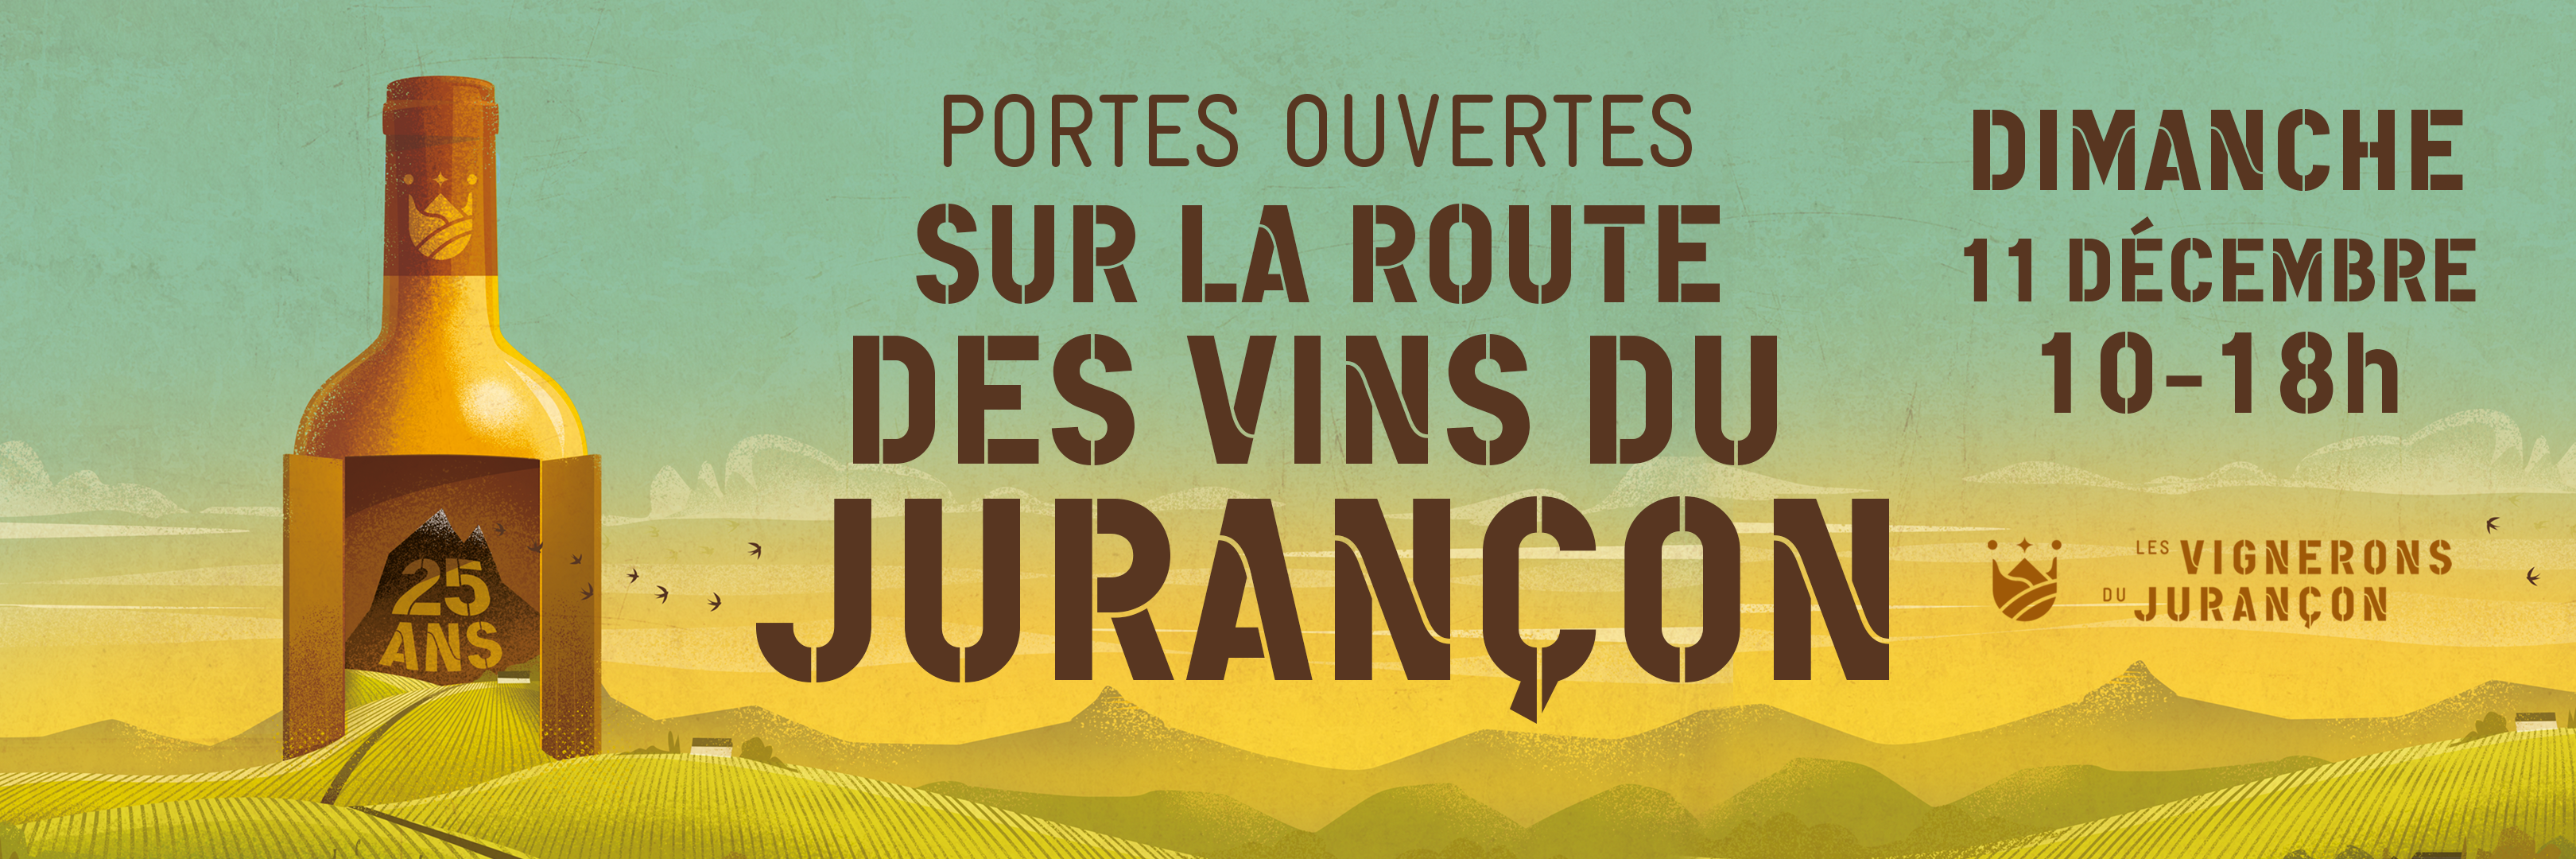 25ème édition des Portes Ouvertes " Sur la Route des Vins du Jurançon"